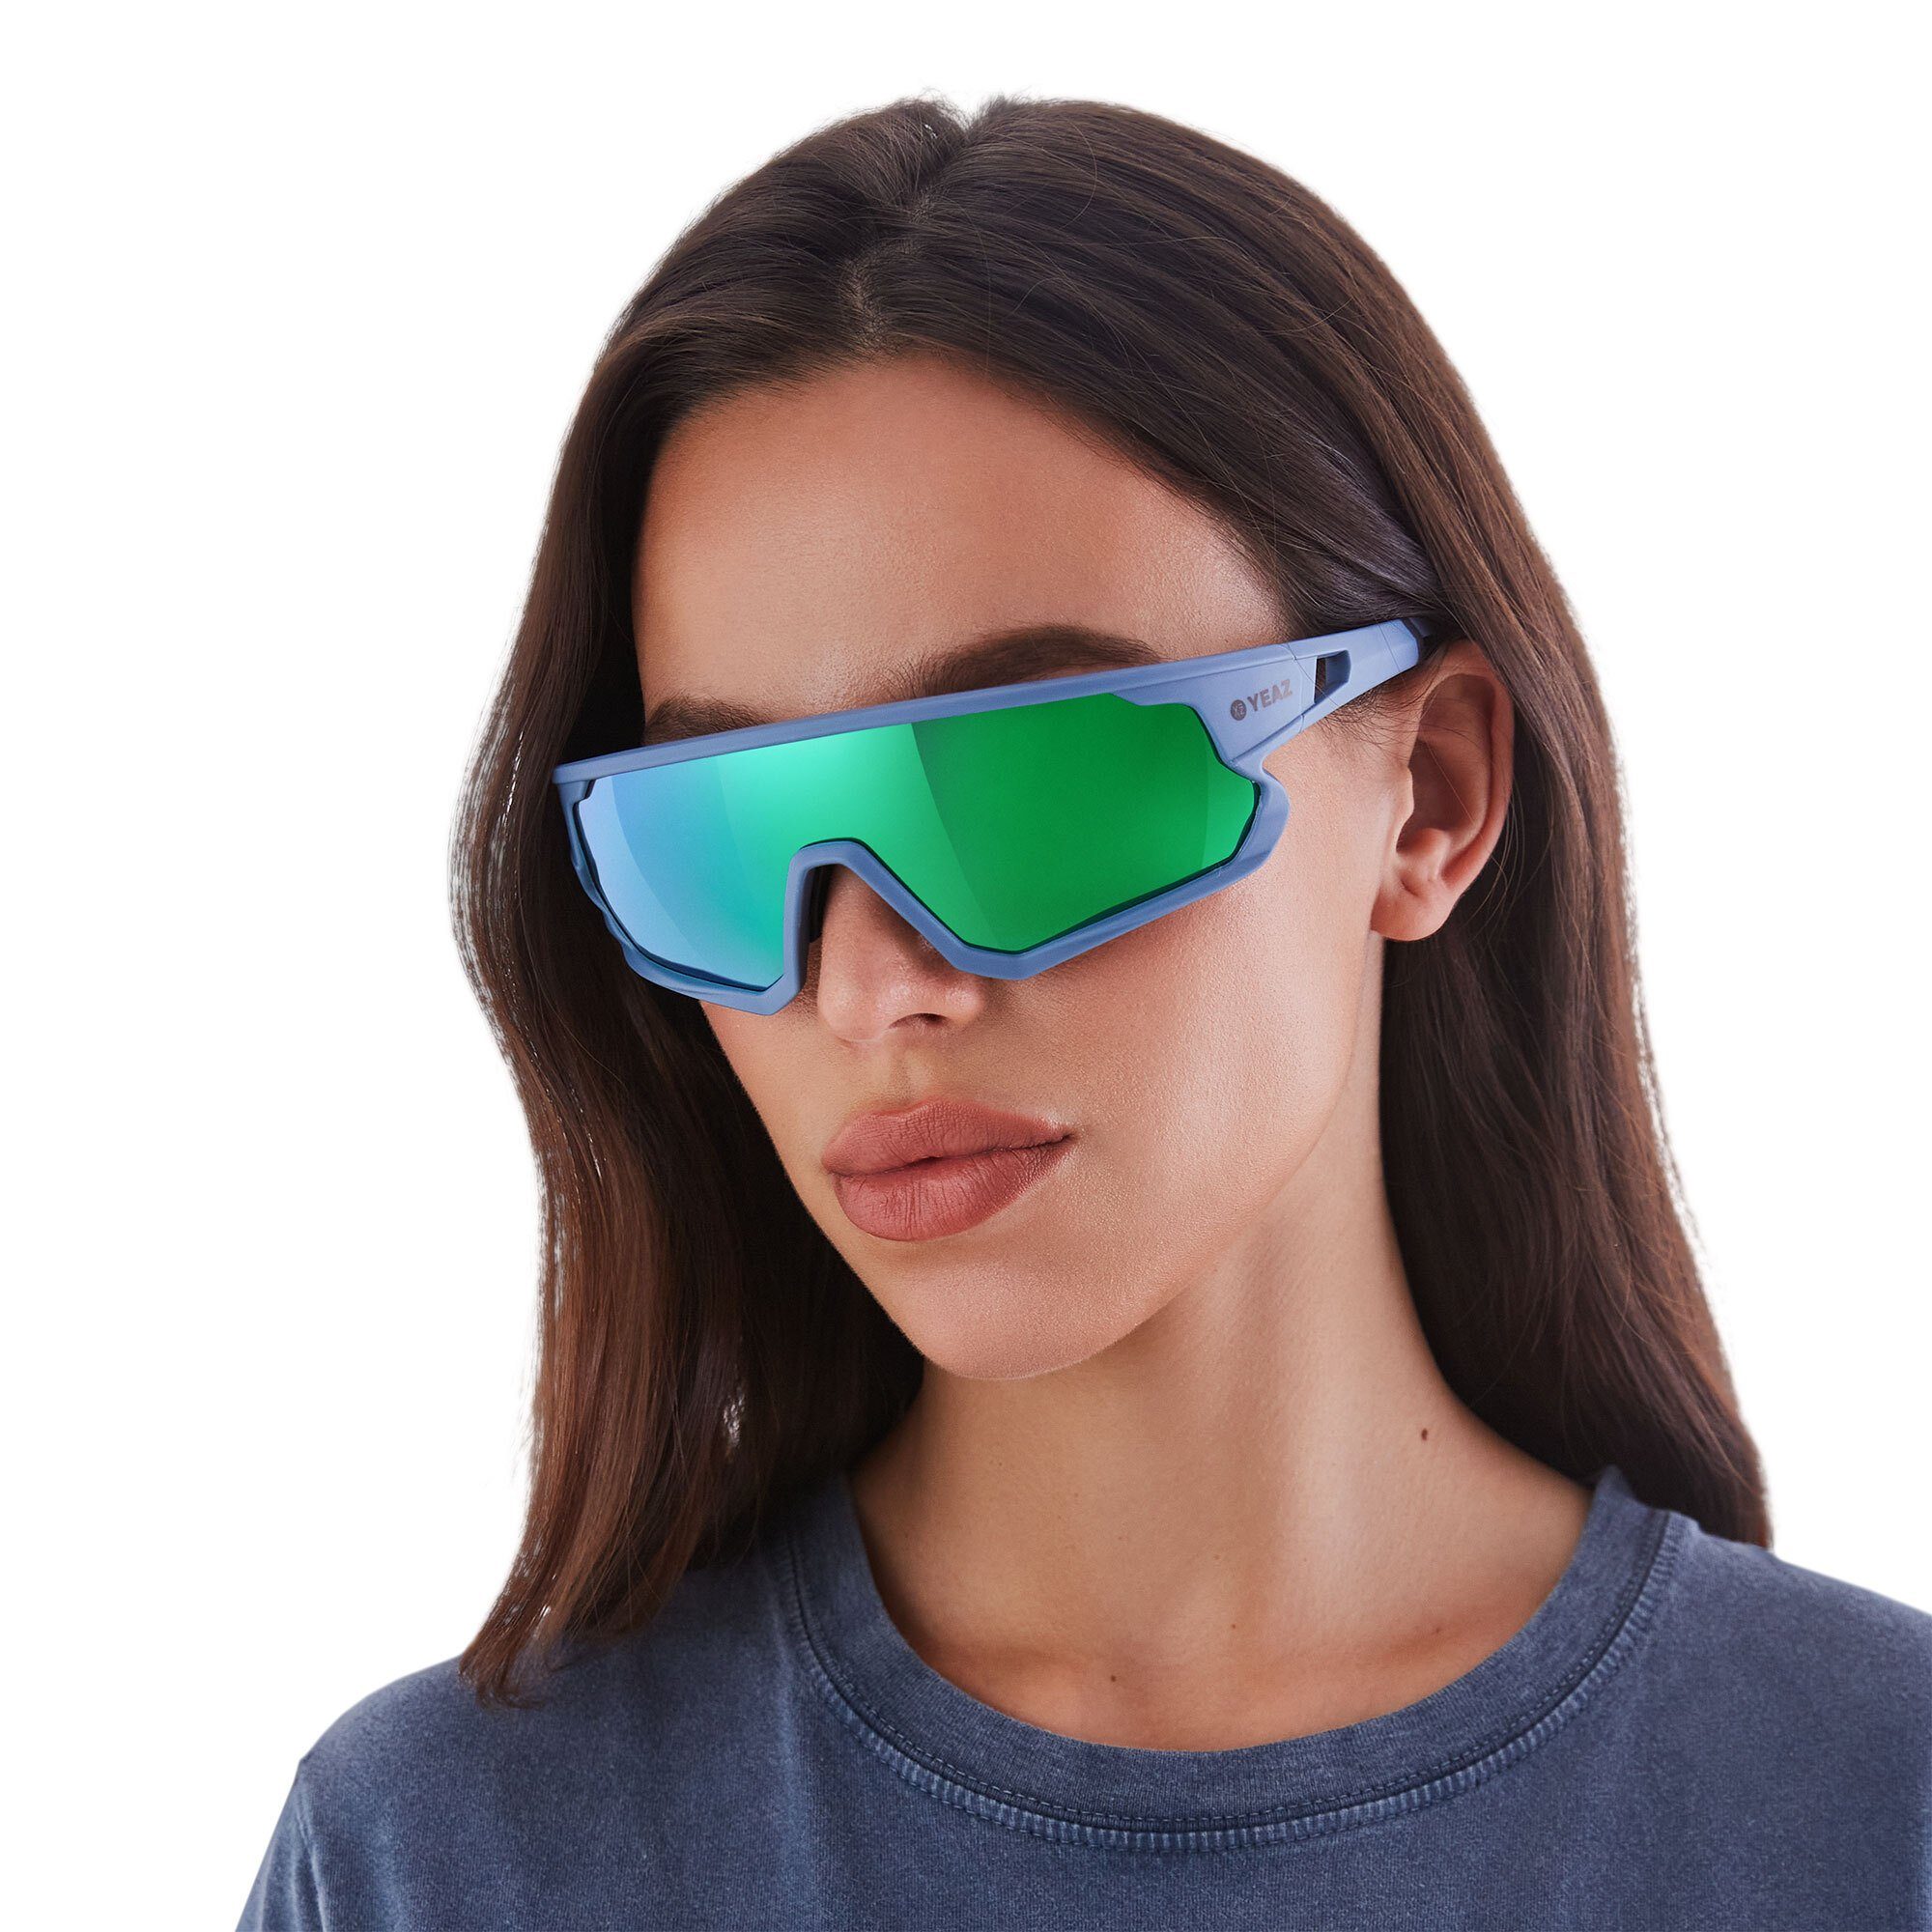 YEAZ Sportbrille SUNRISE sport-sonnenbrille cyan bei optimierter Guter blue/green, Schutz Sicht